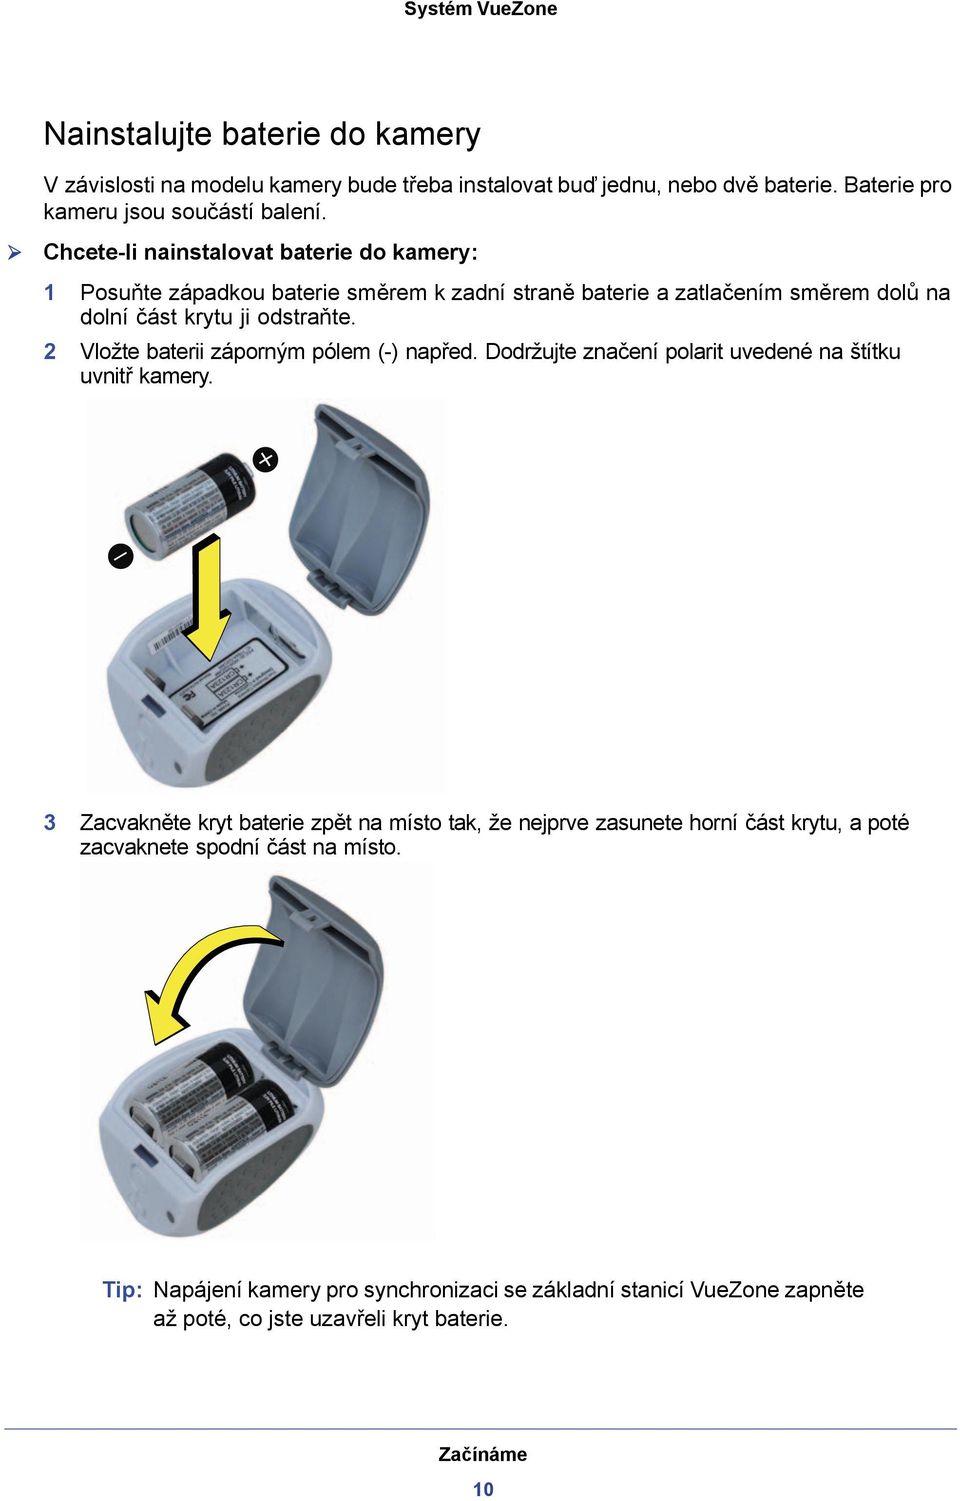 2 Vložte baterii záporným pólem (-) napřed. Dodržujte značení polarit uvedené na štítku uvnitř kamery.